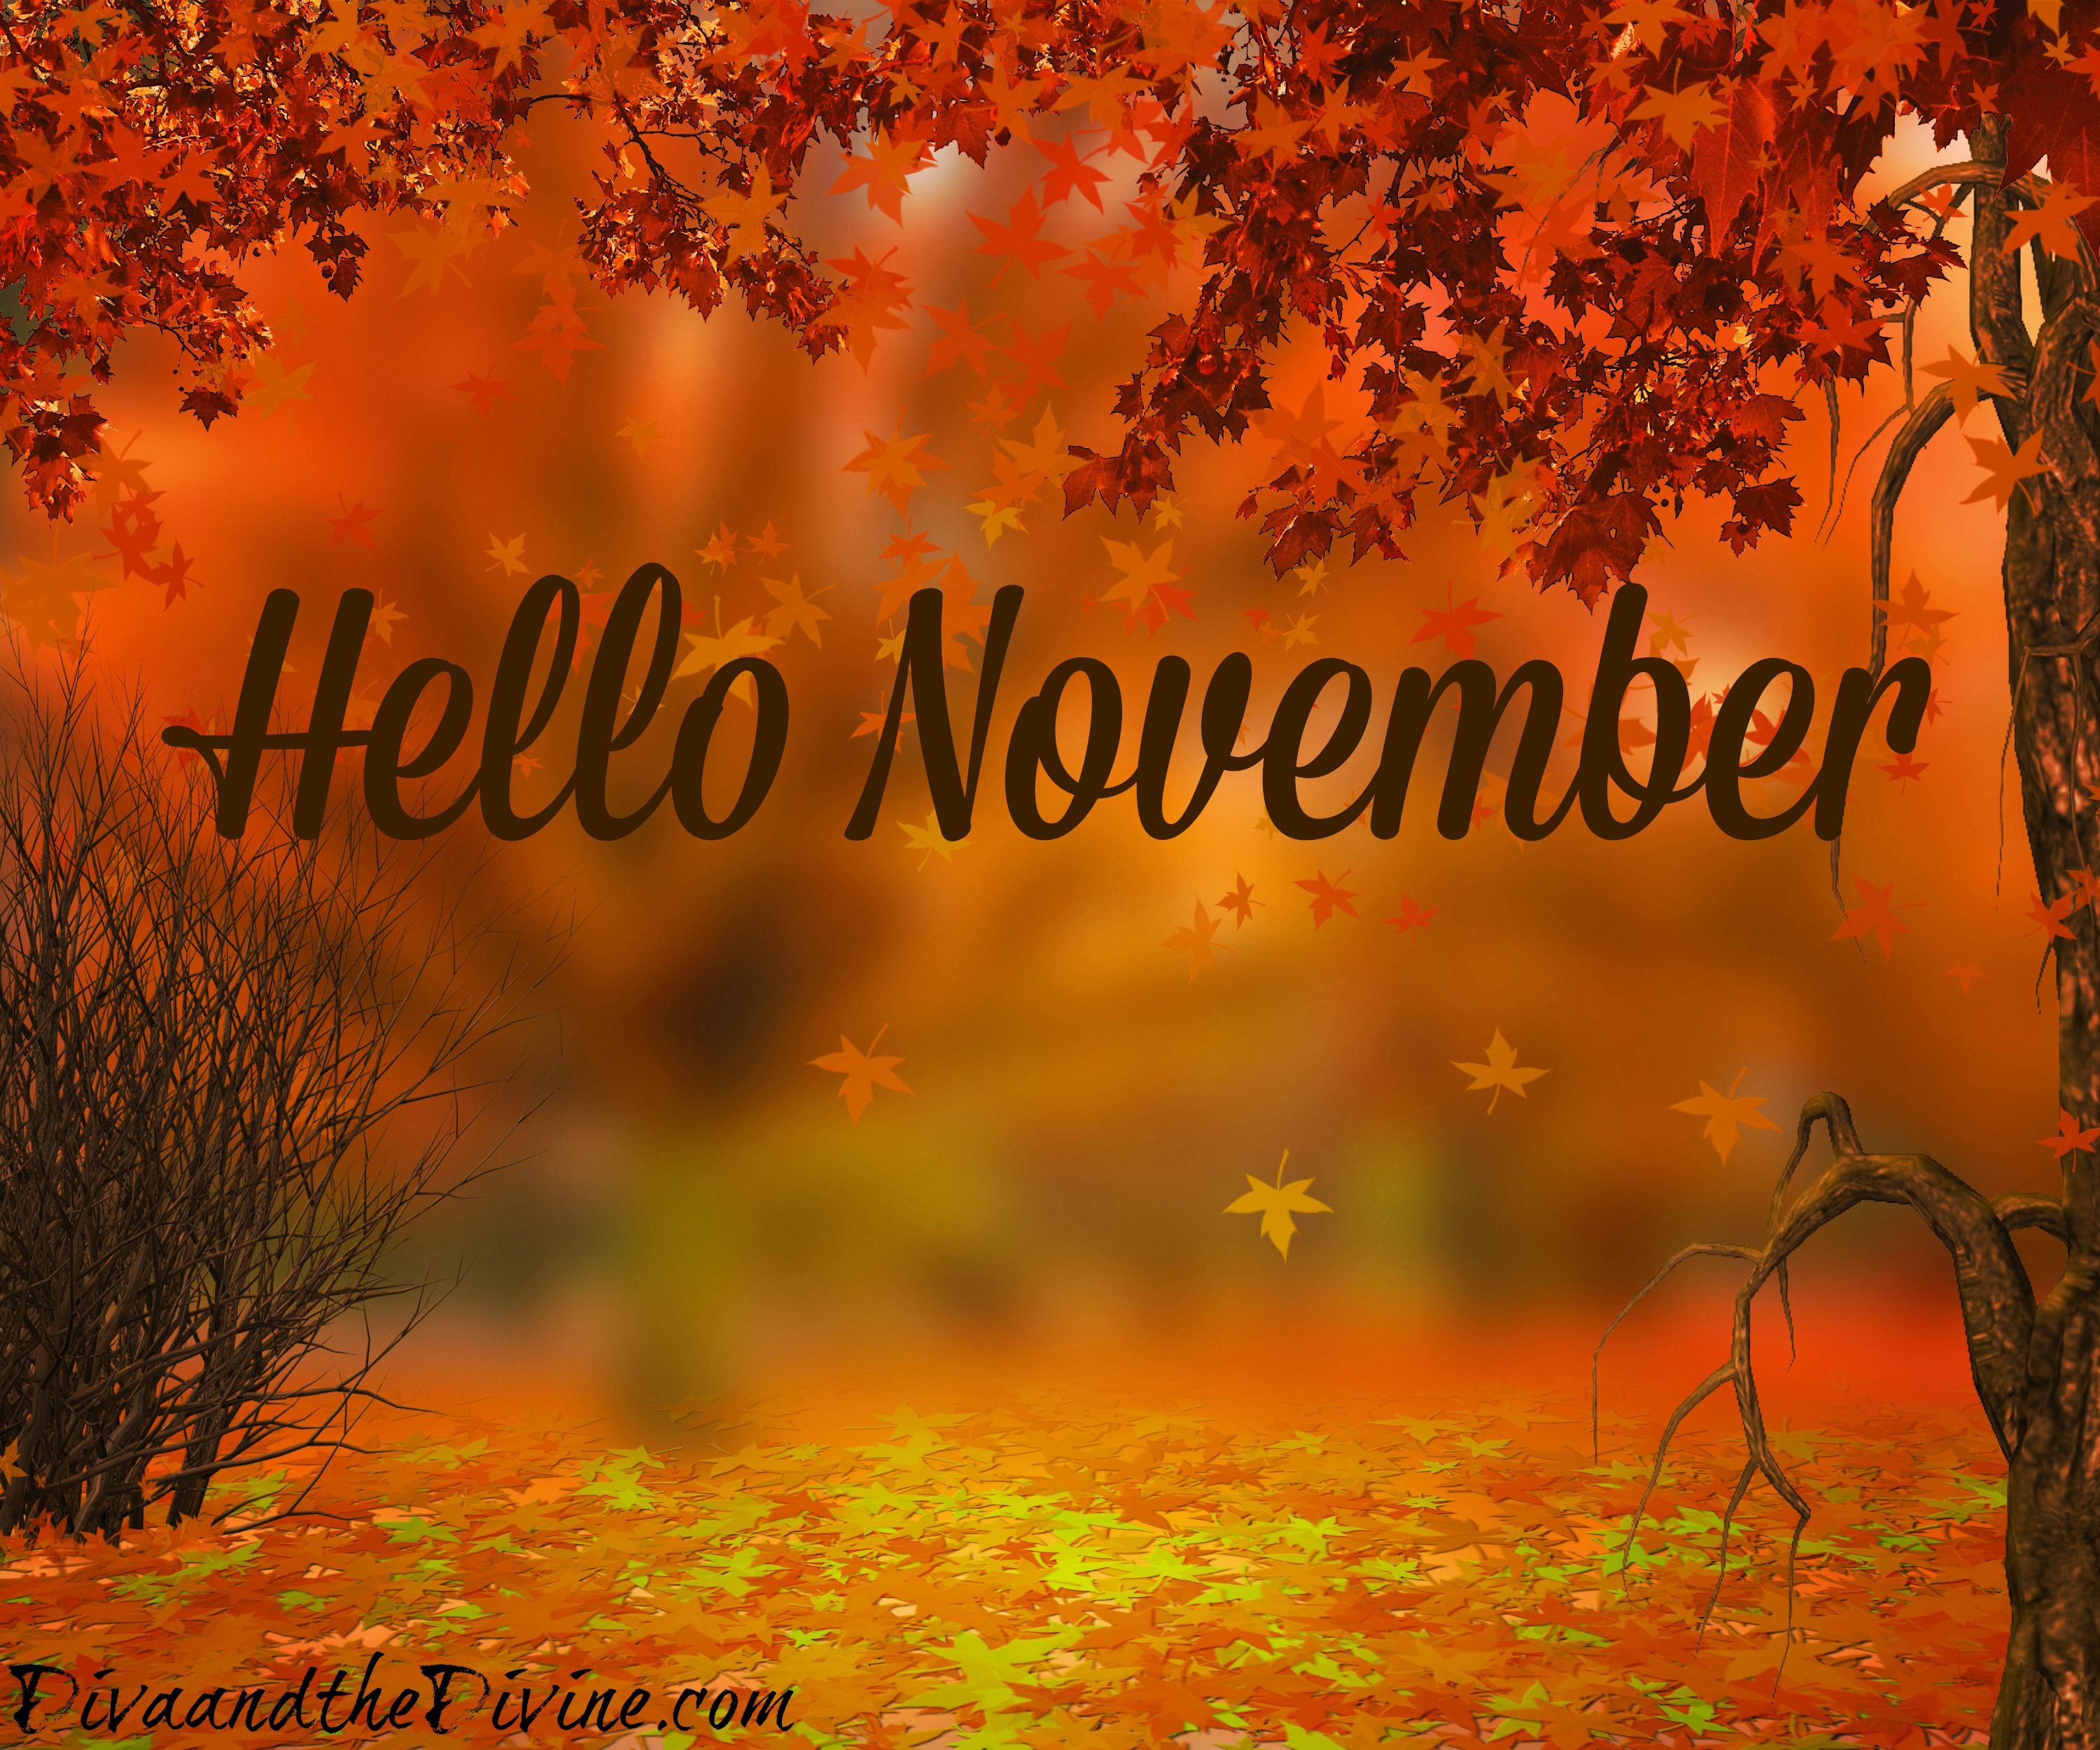 HELLO NOVEMBER picture, Hello november, November image